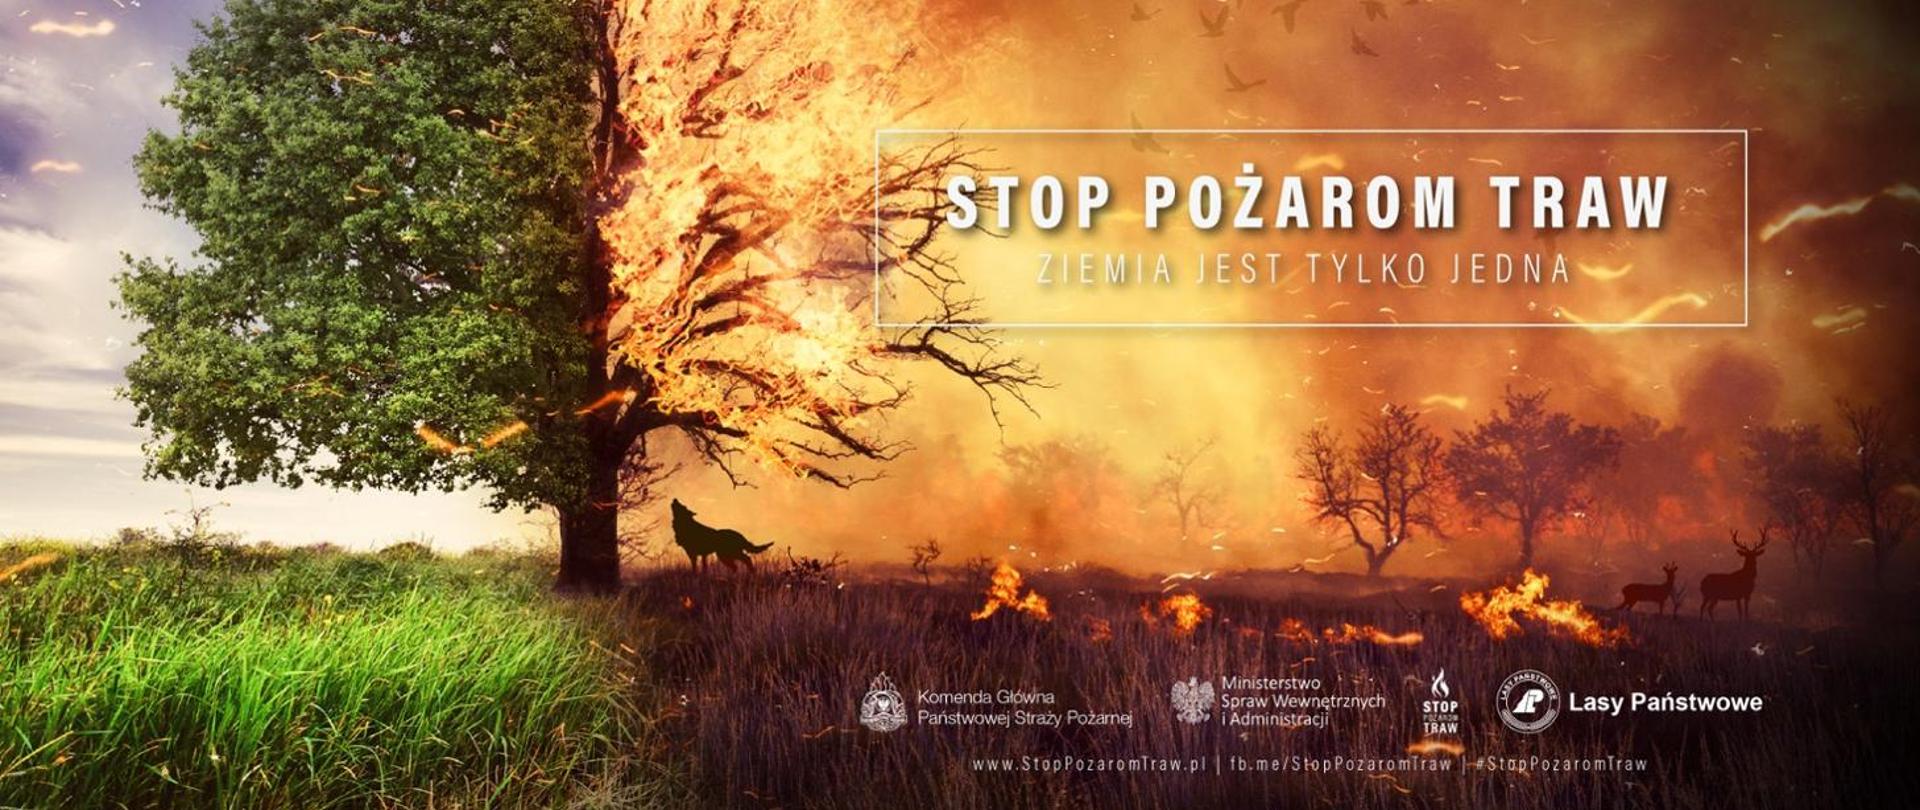 Zdjęcie kampanii społecznej "Stop pożarom traw"